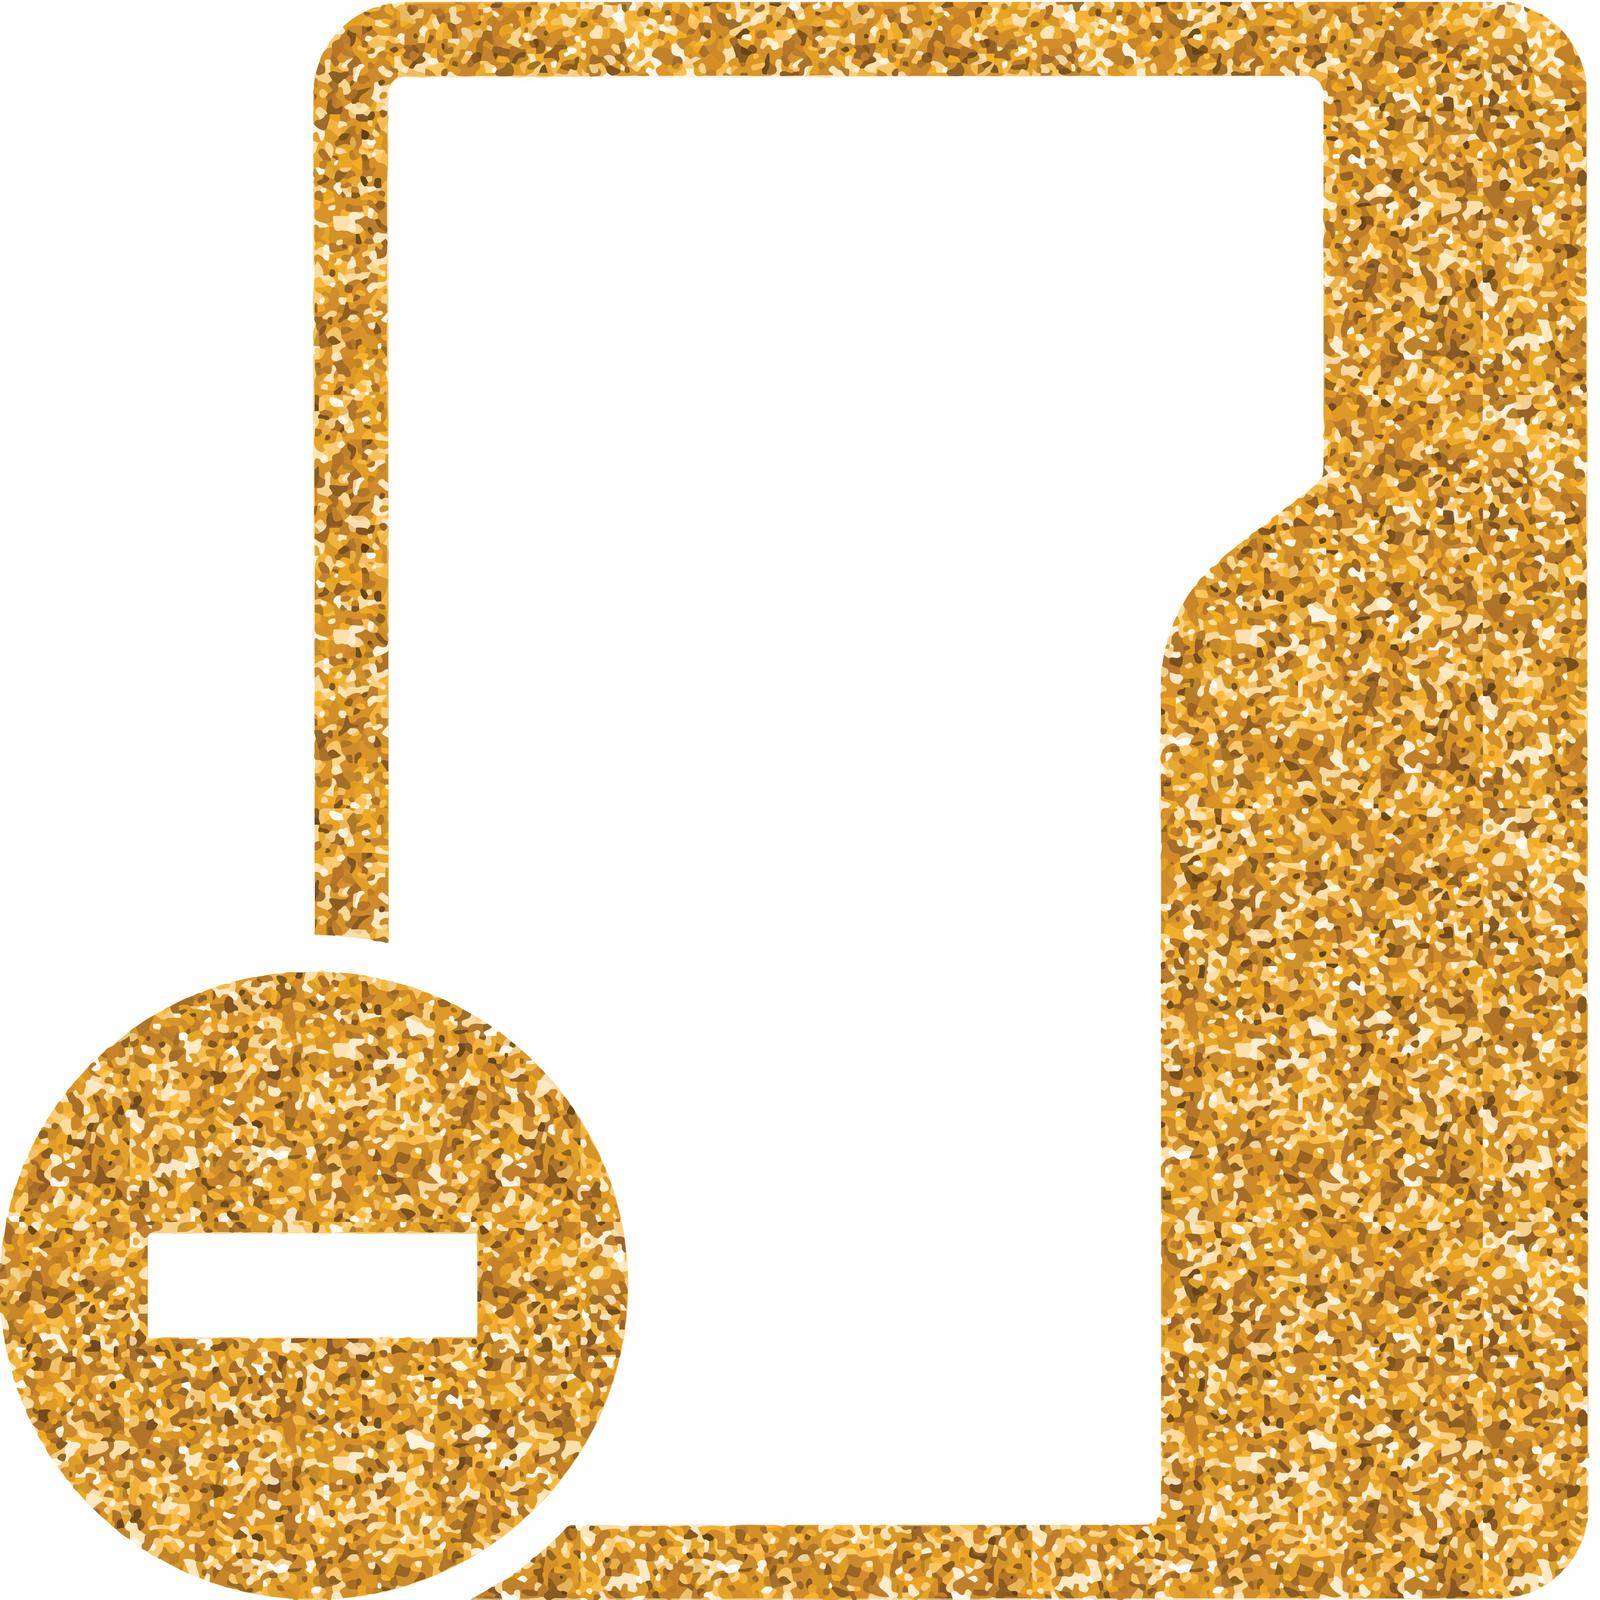 Folder icon in gold glitter texture. Sparkle luxury style vector illustration.